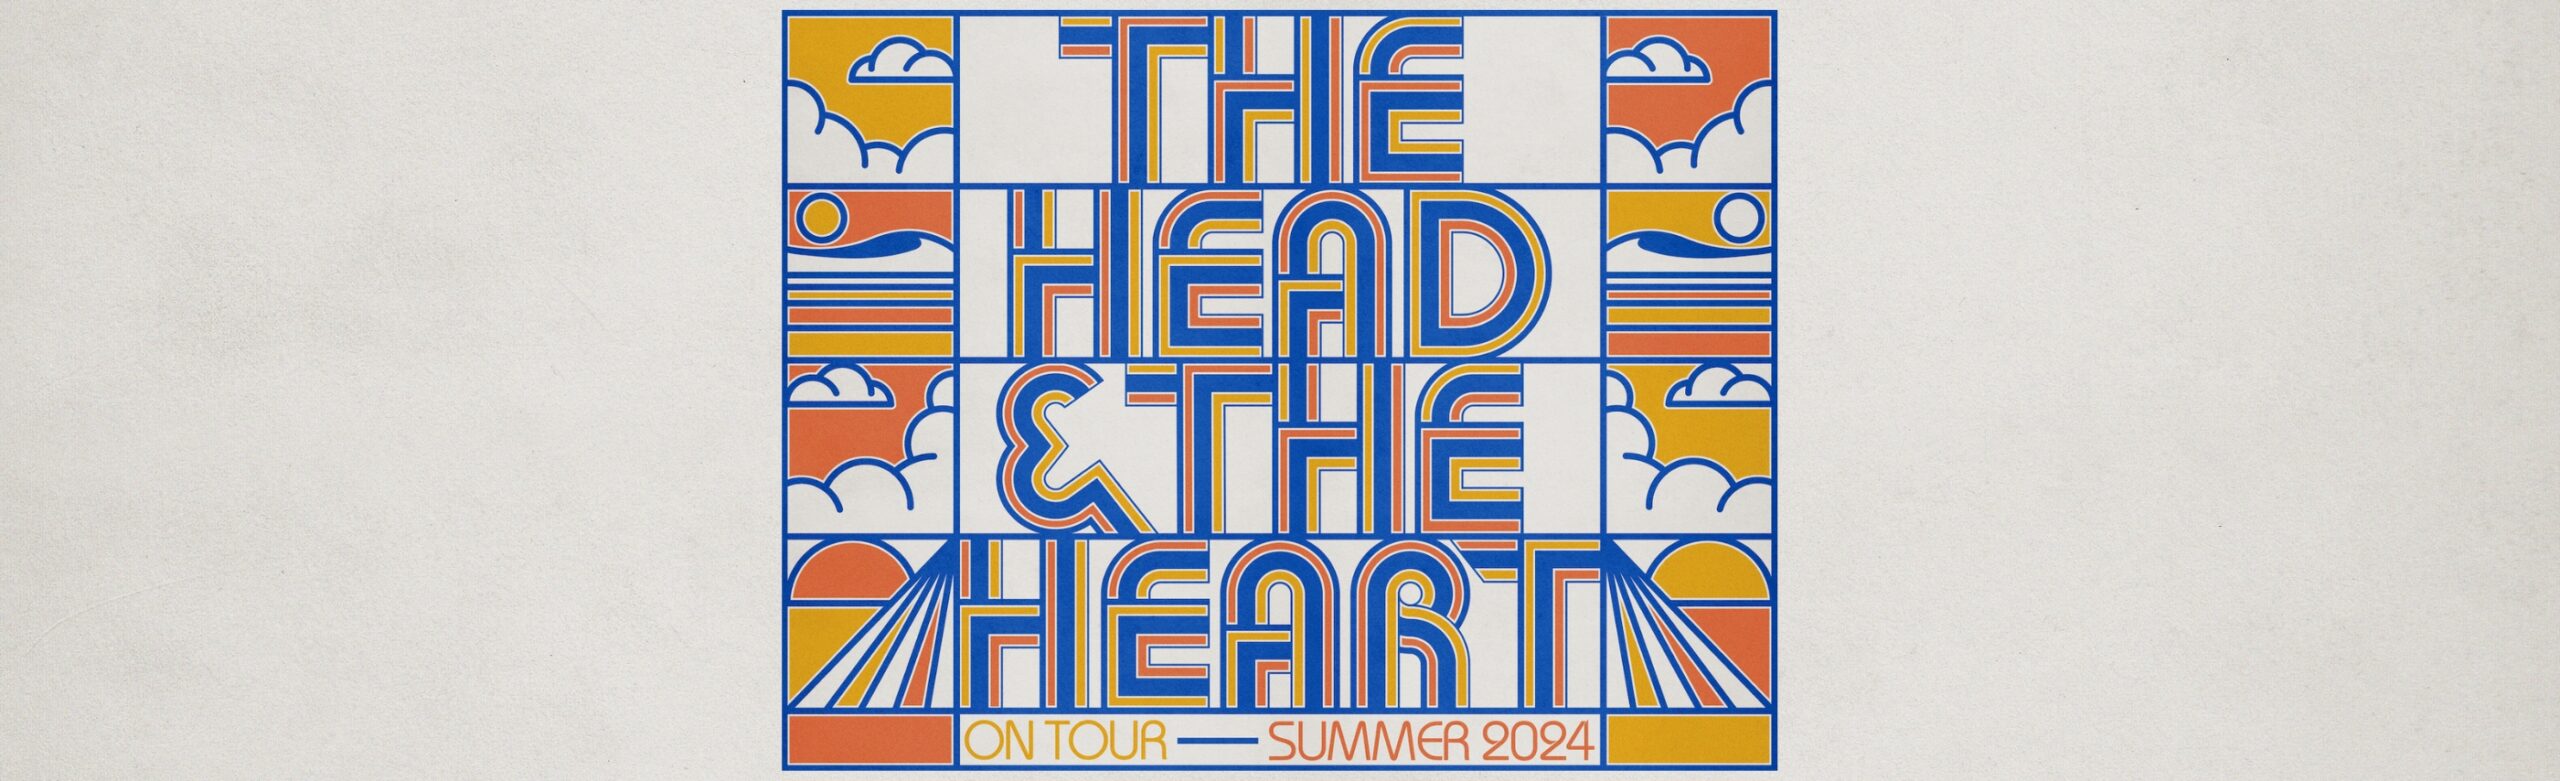 The Head & the Heart